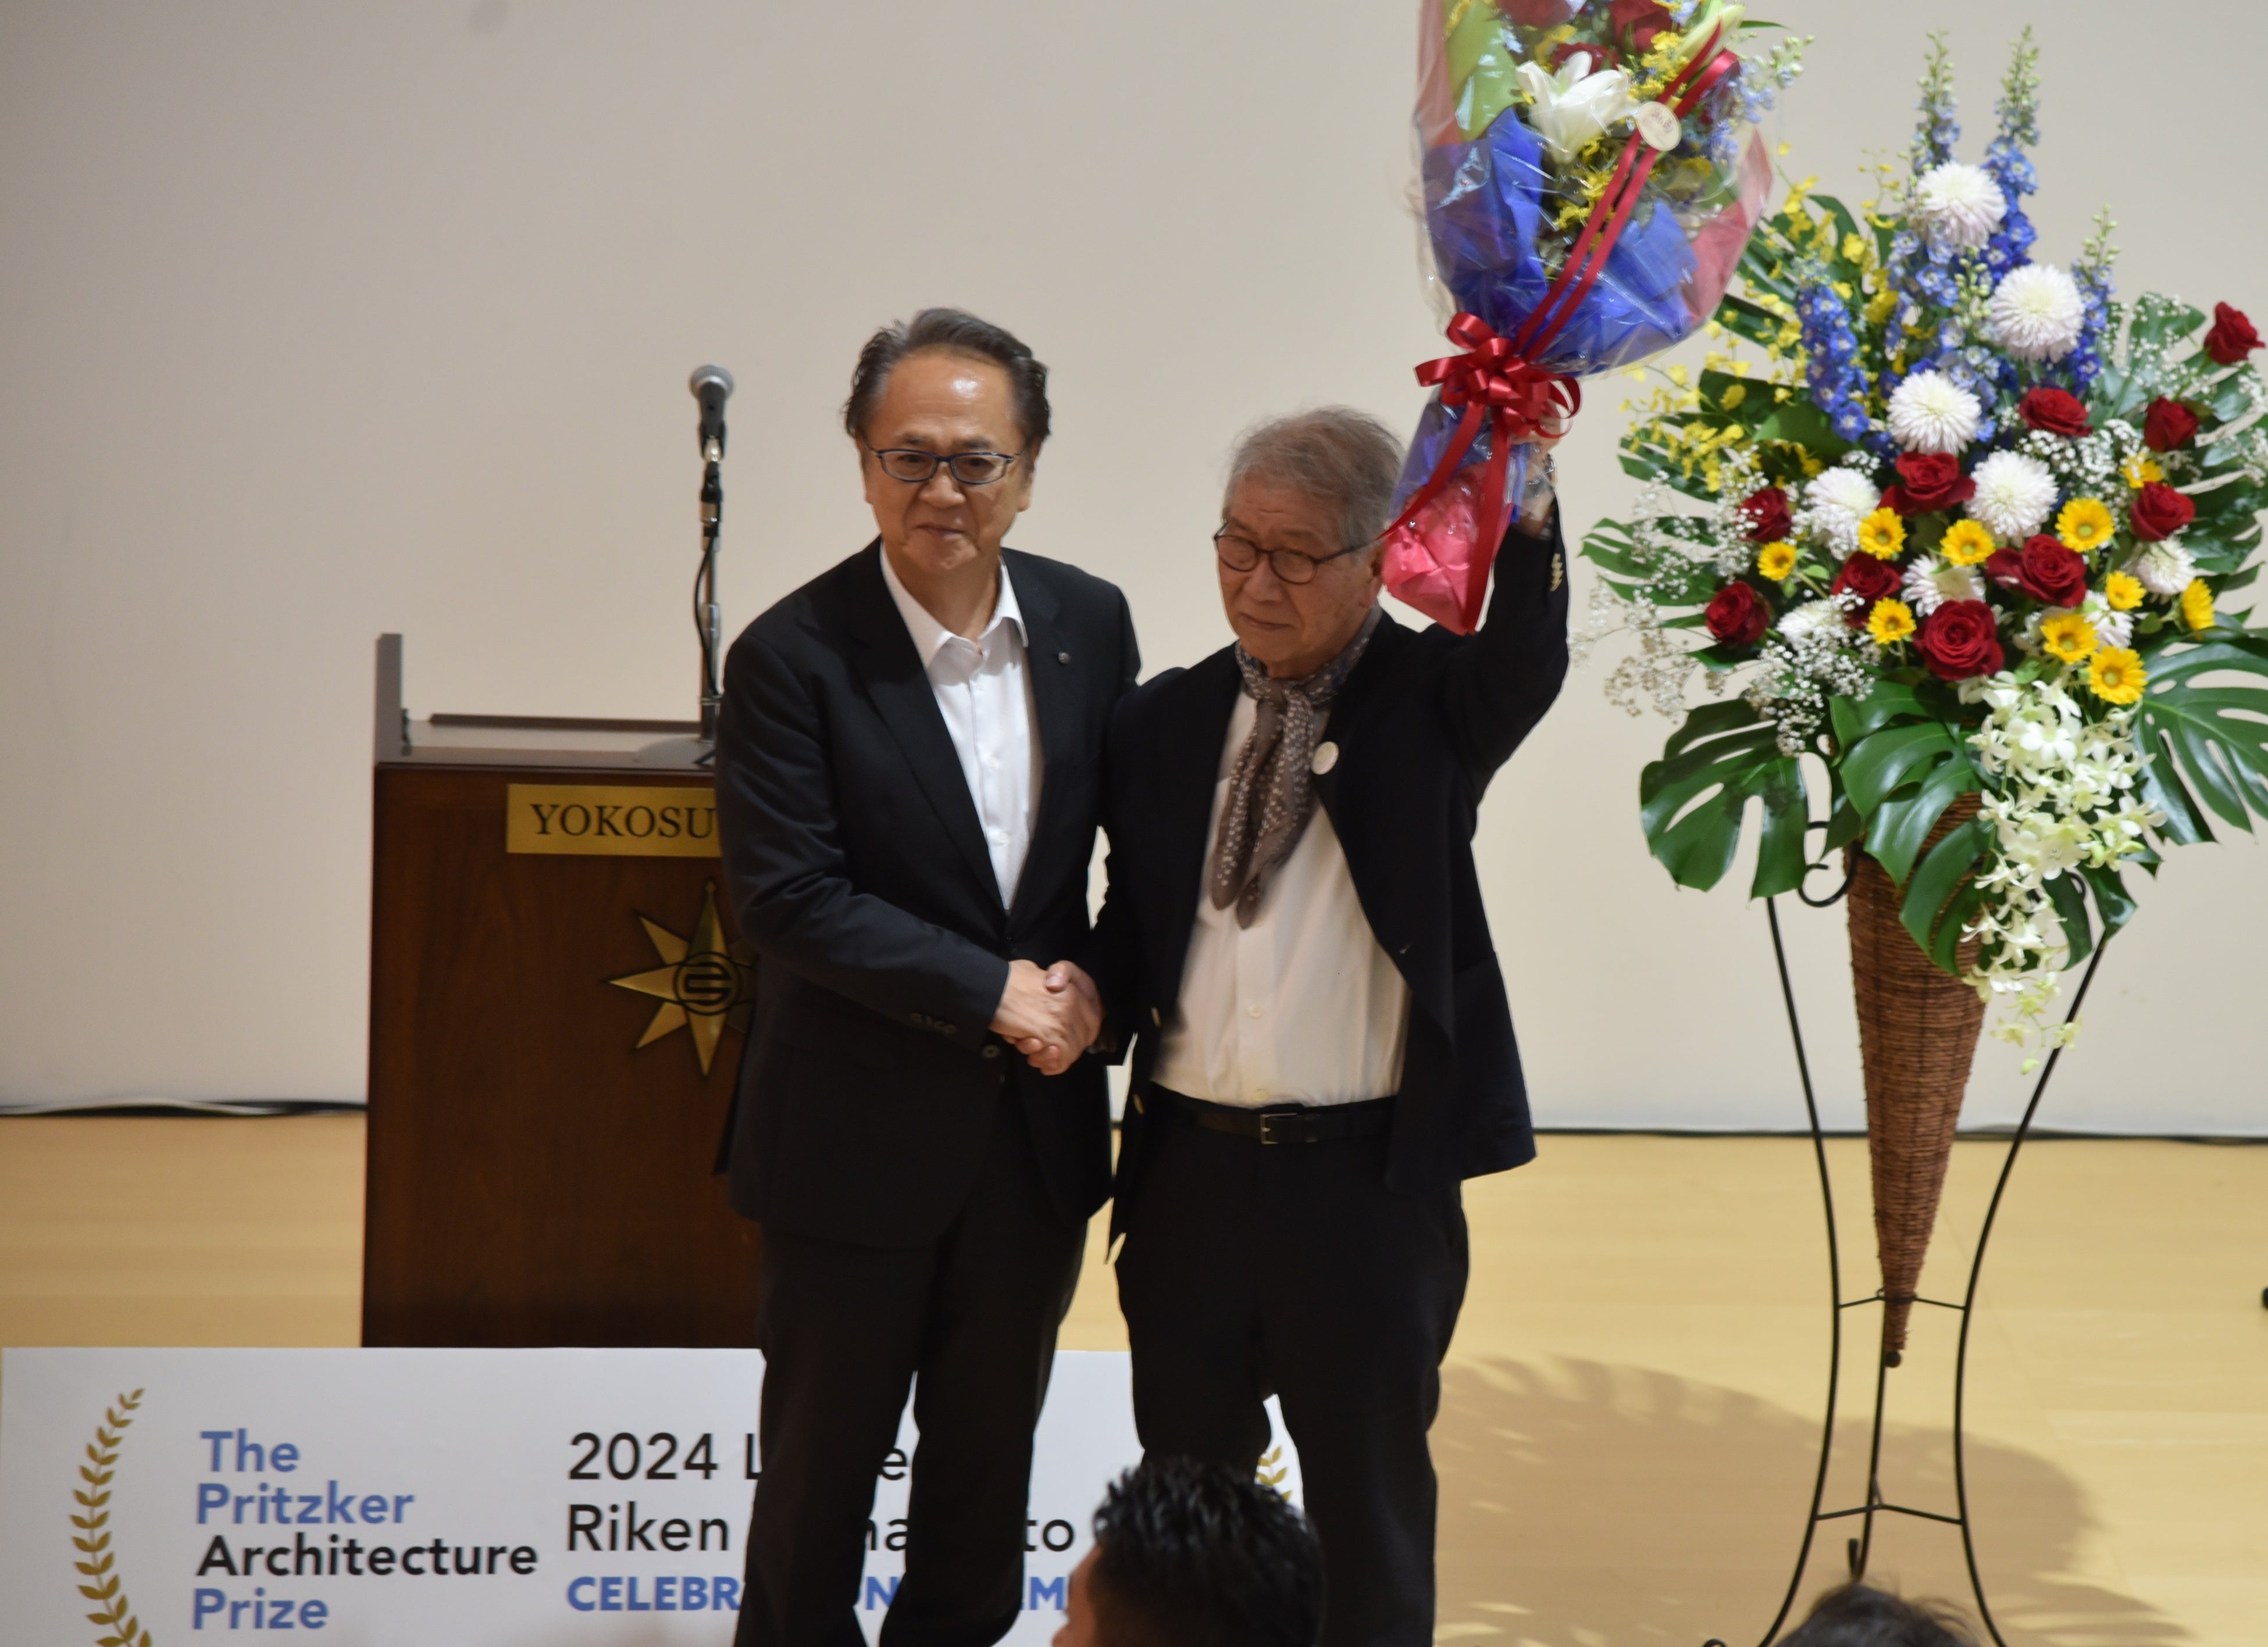 「山本理顕氏プリツカー賞受賞記念セレモニー」を開催しました